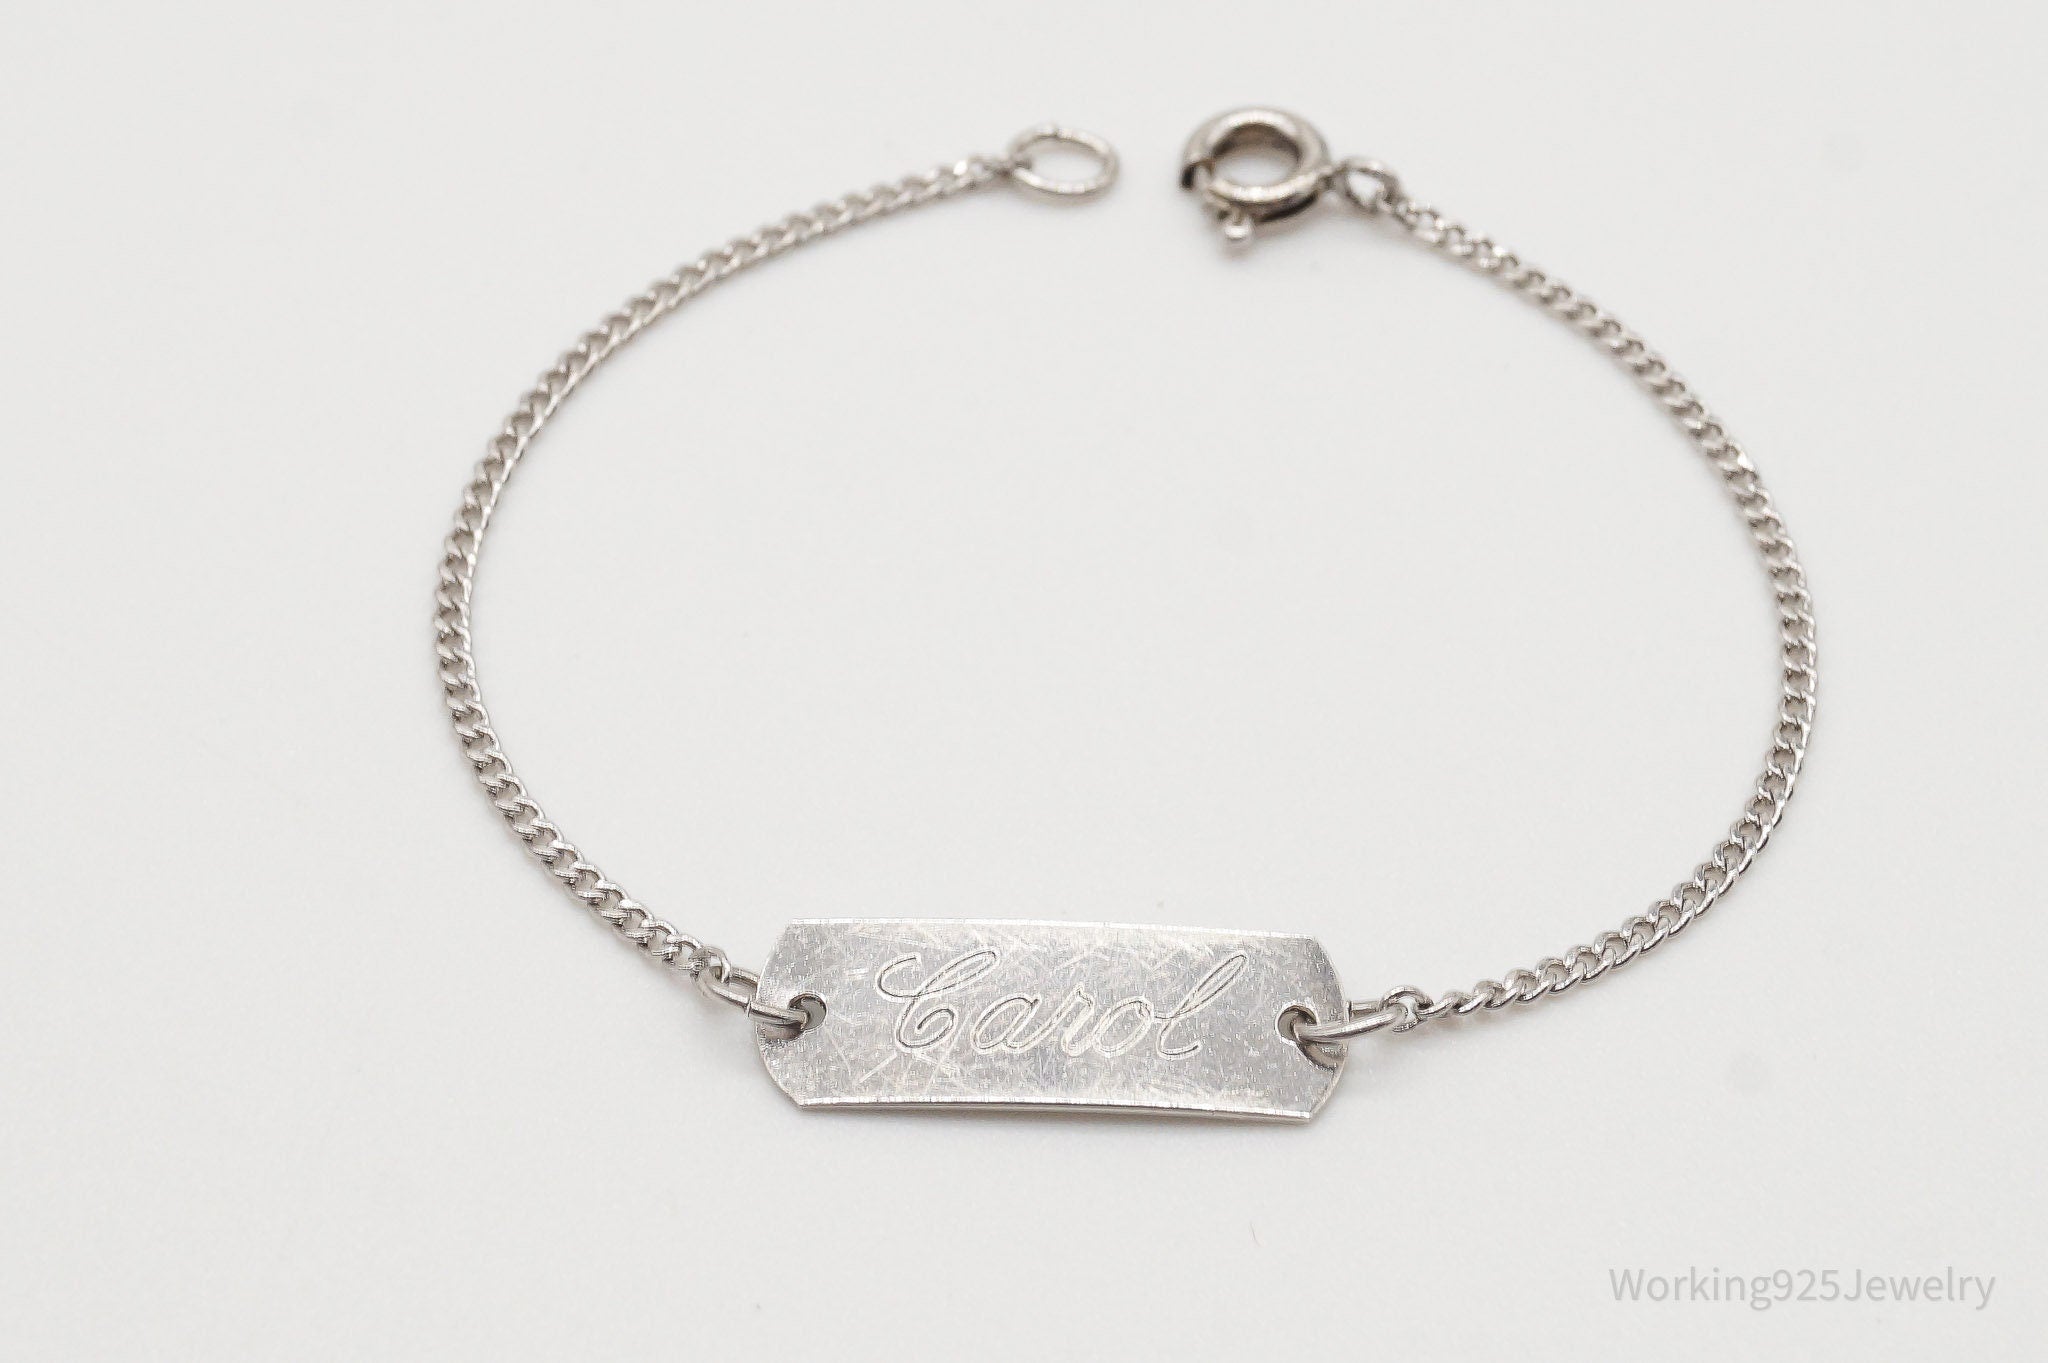 Antique "Carol" Engraved Name ID Bar Sterling Silver Bracelet